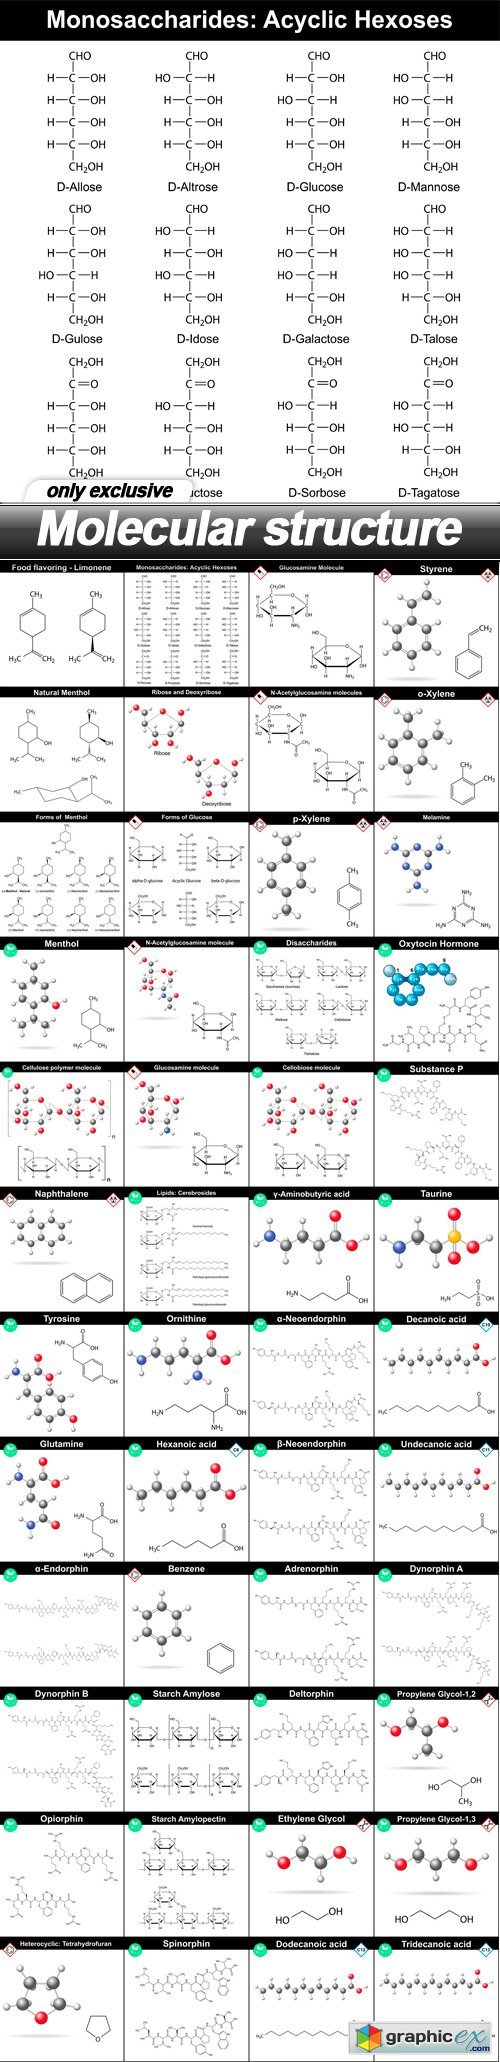 Molecular structure - 48 EPS